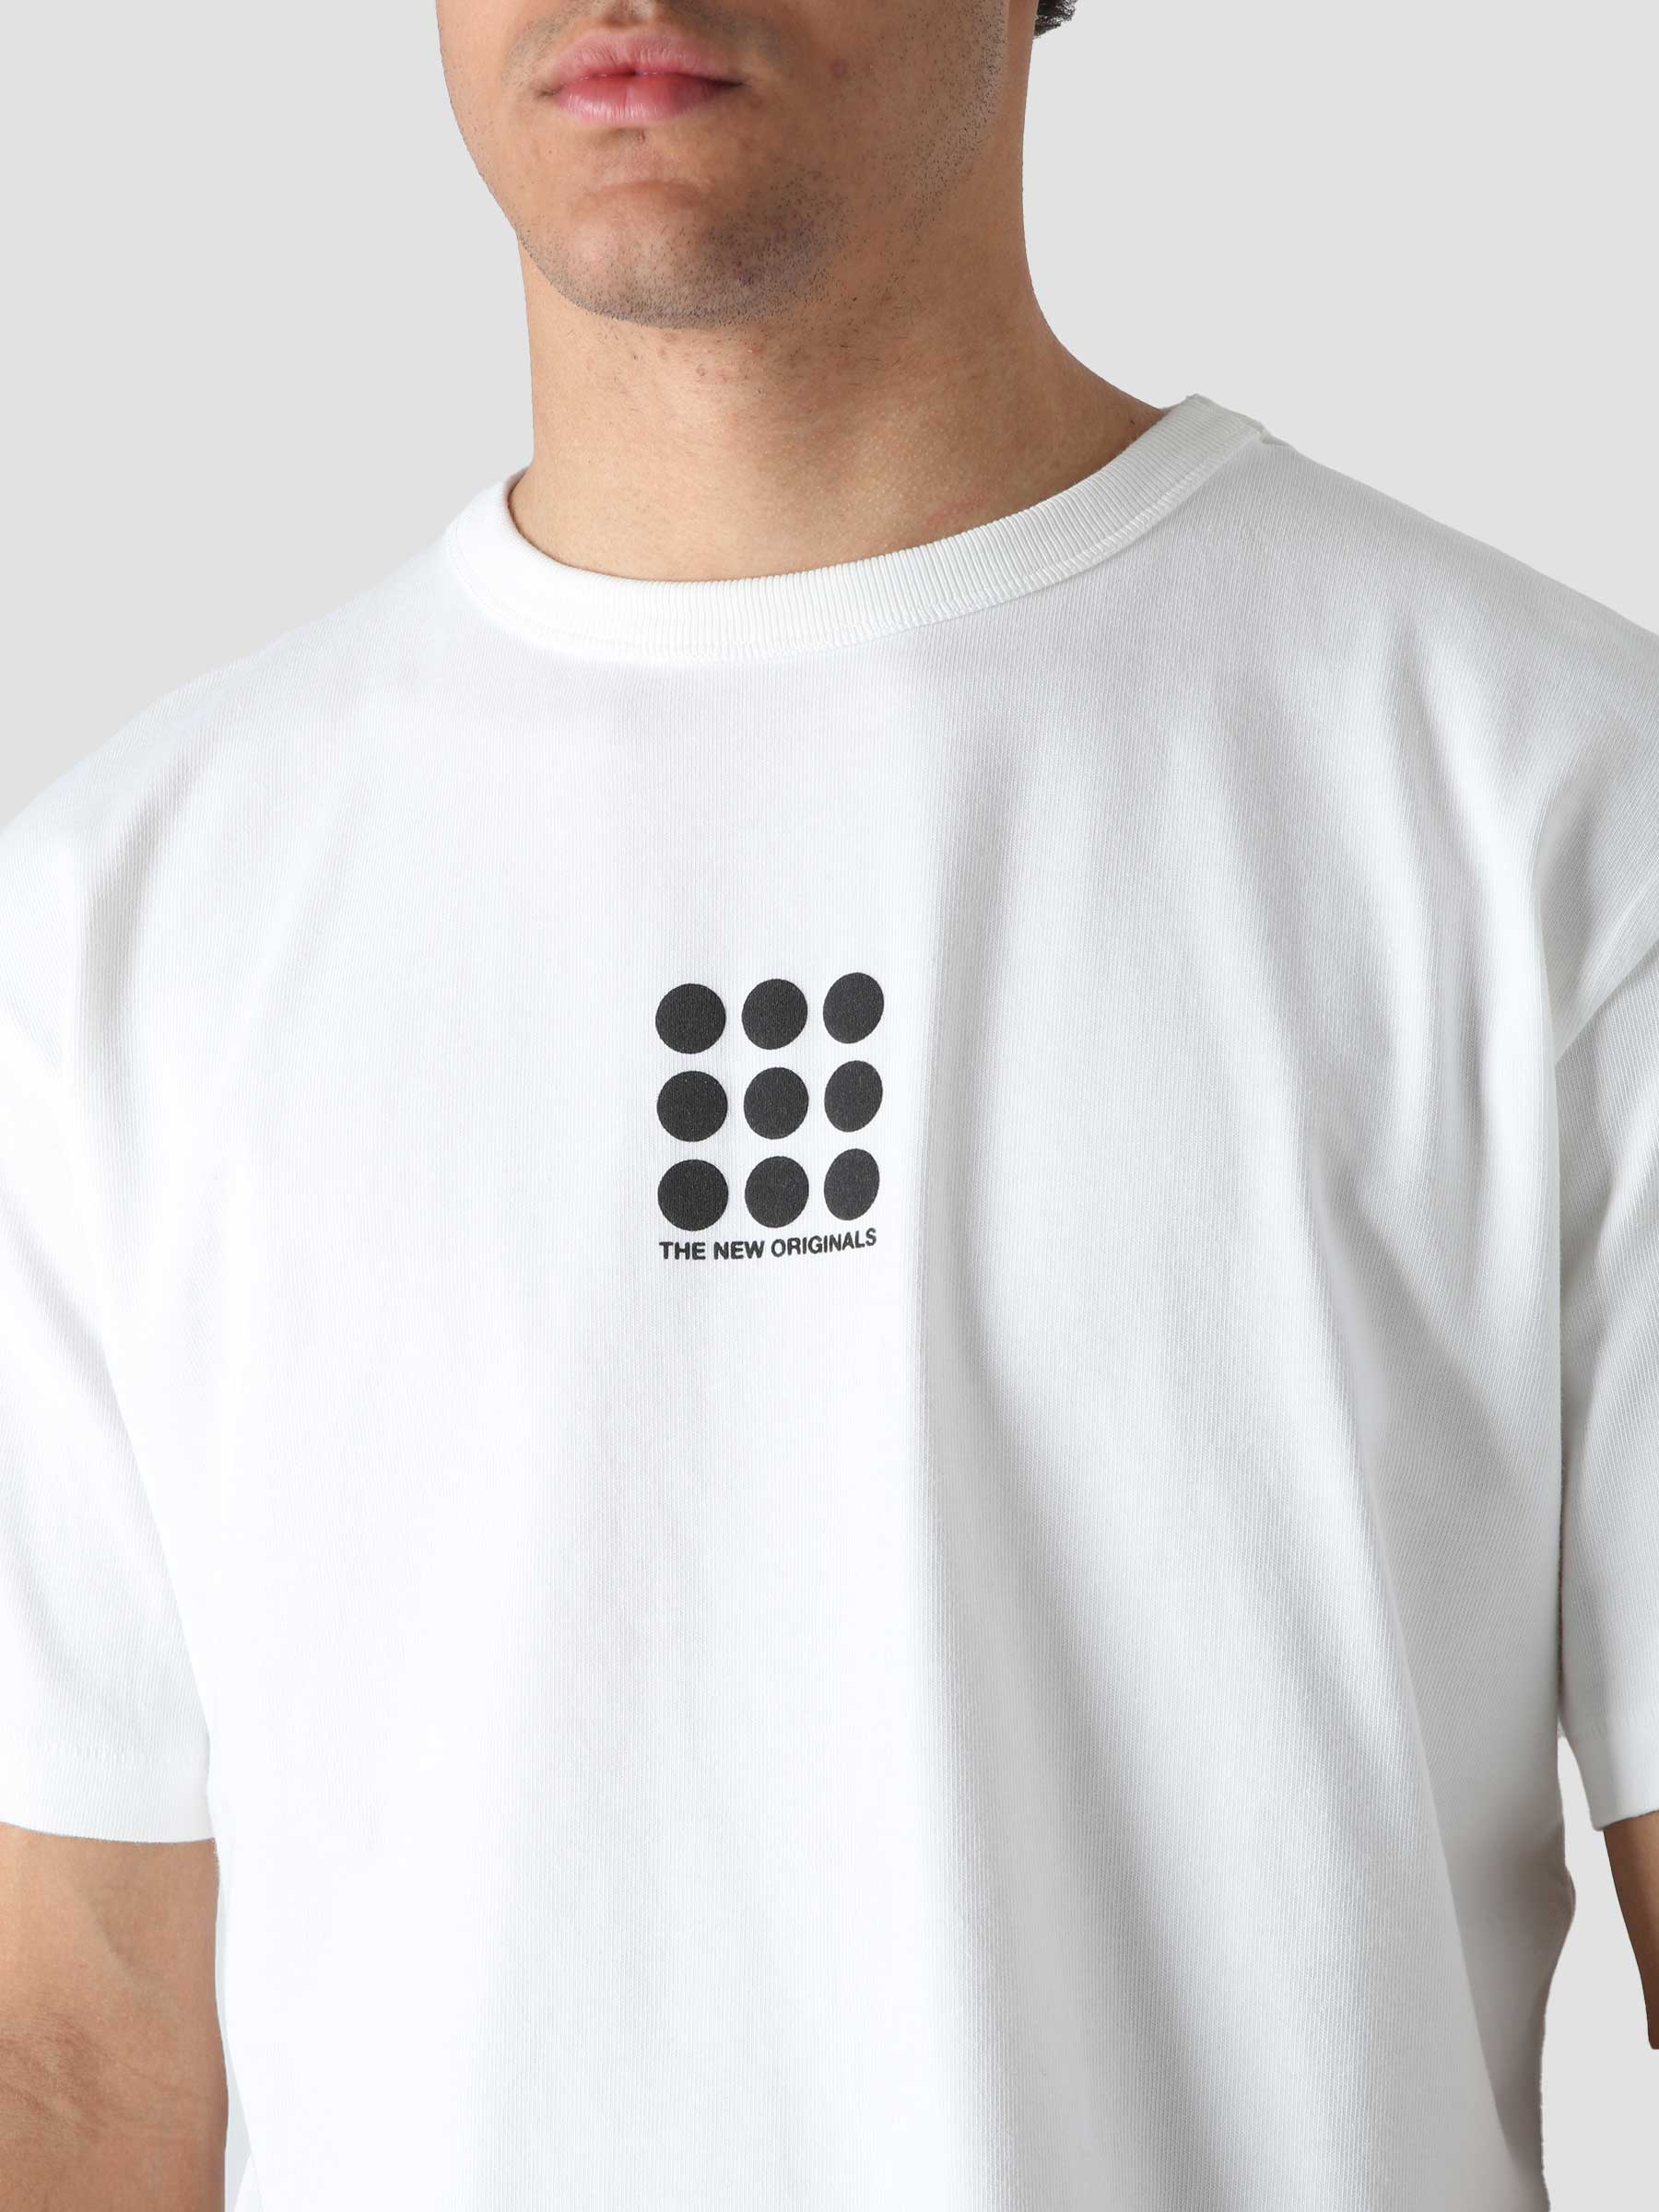 9-Dots T-Shirt White TNO.212.9D.100.000